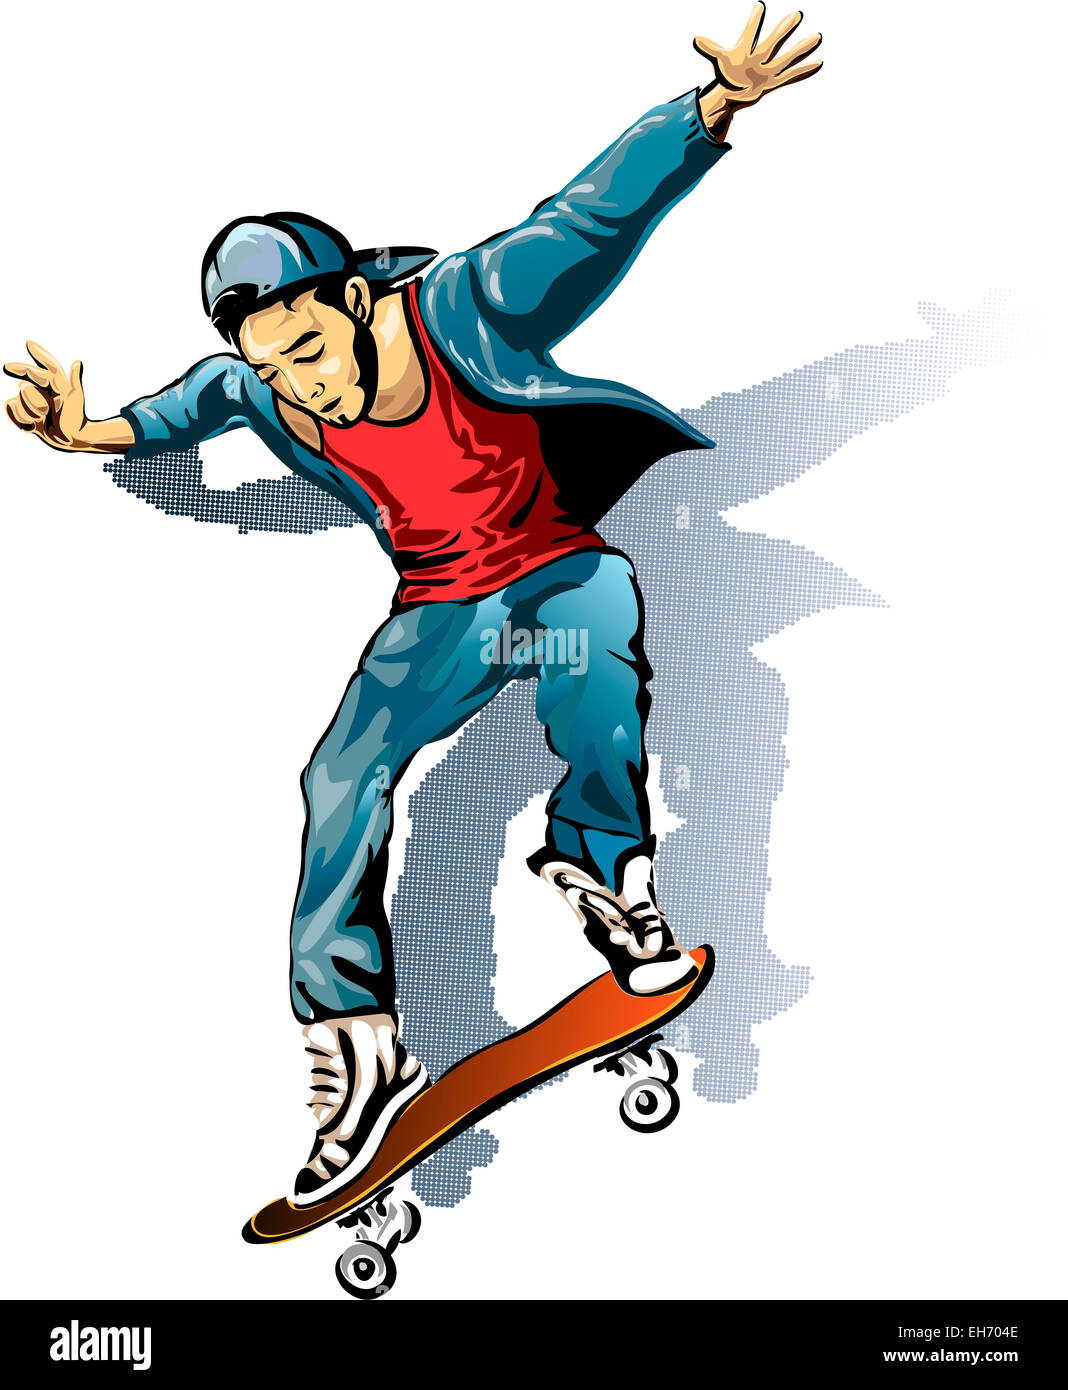 Abbildung mit jungen Mann auf dem Skateboard in Skizze Stil gezeichnet Stockfoto